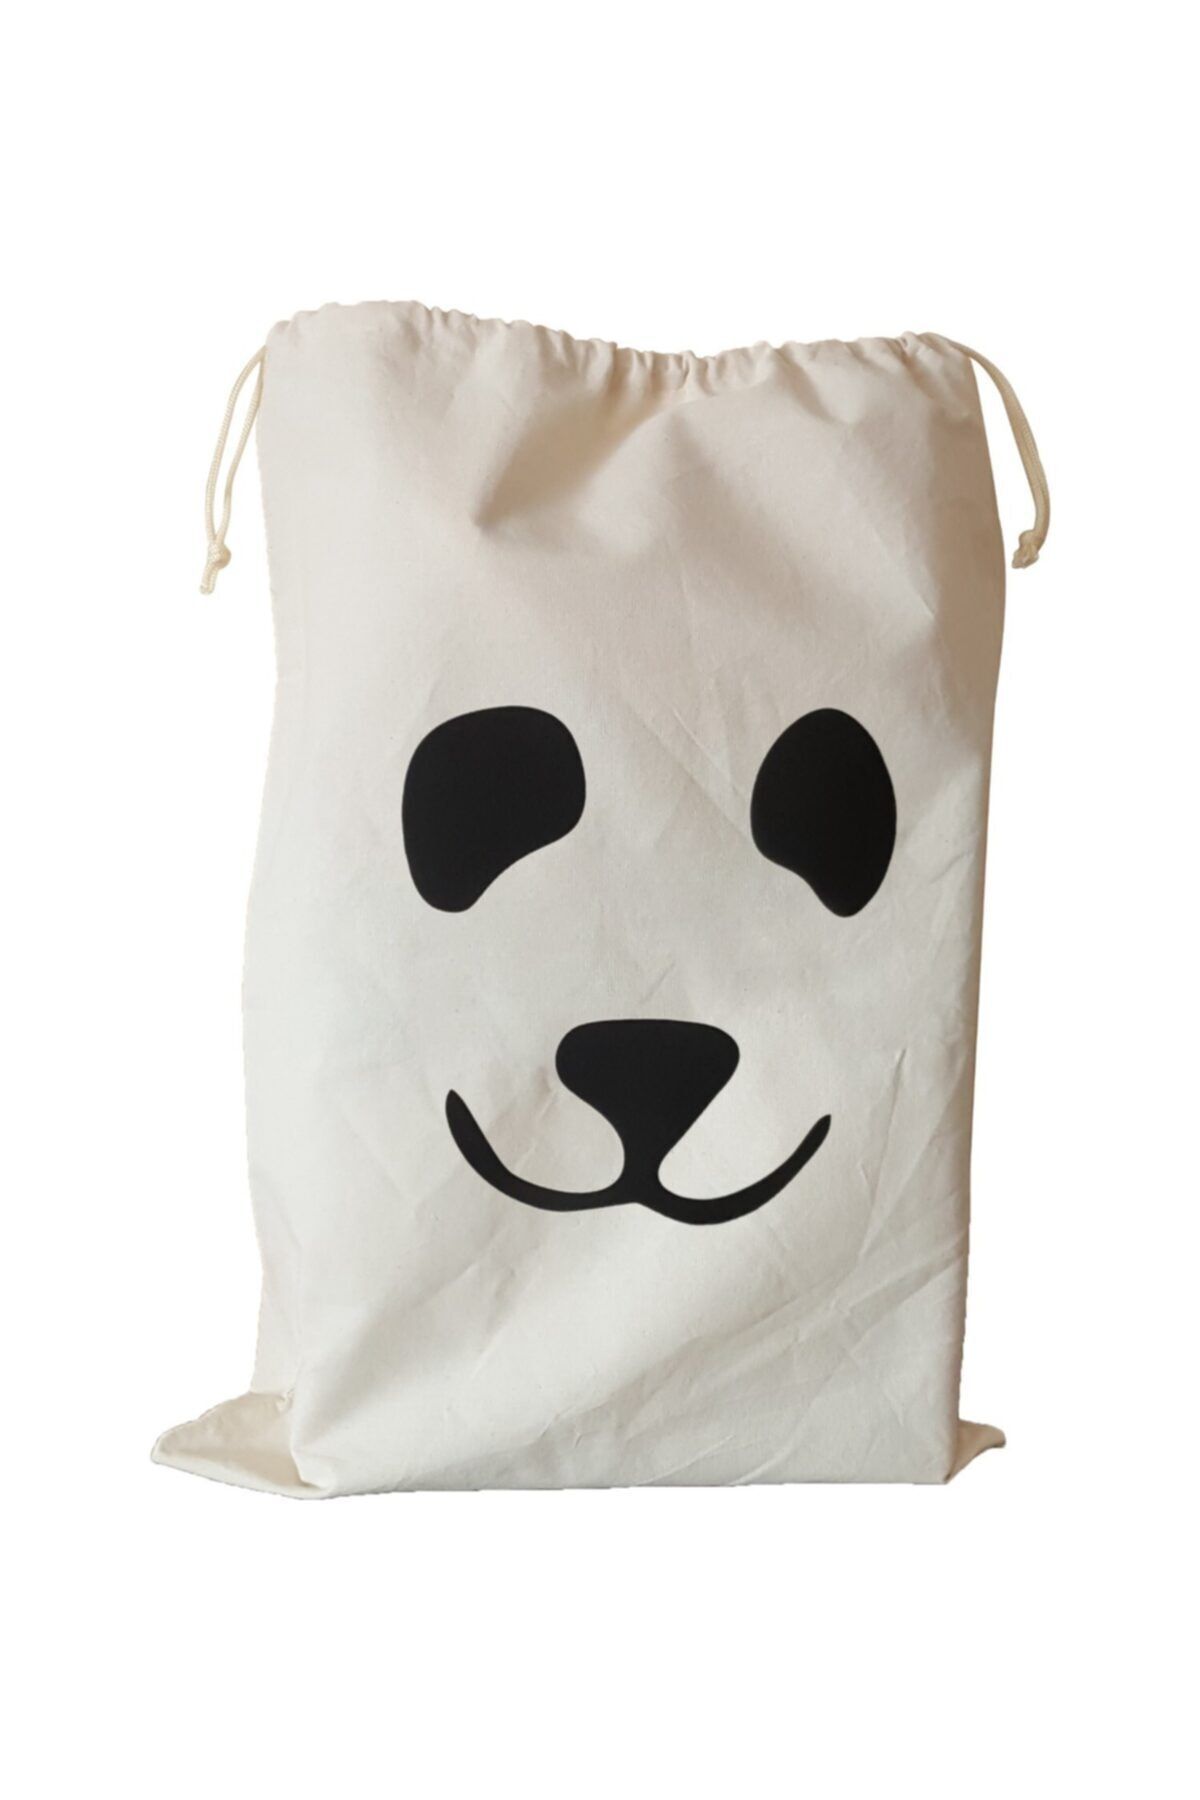 BugyBagy - 50x70cm Ebadında Panda Figürlü Kanvas Oyuncak Ve Çamaşır Saklama Torbası